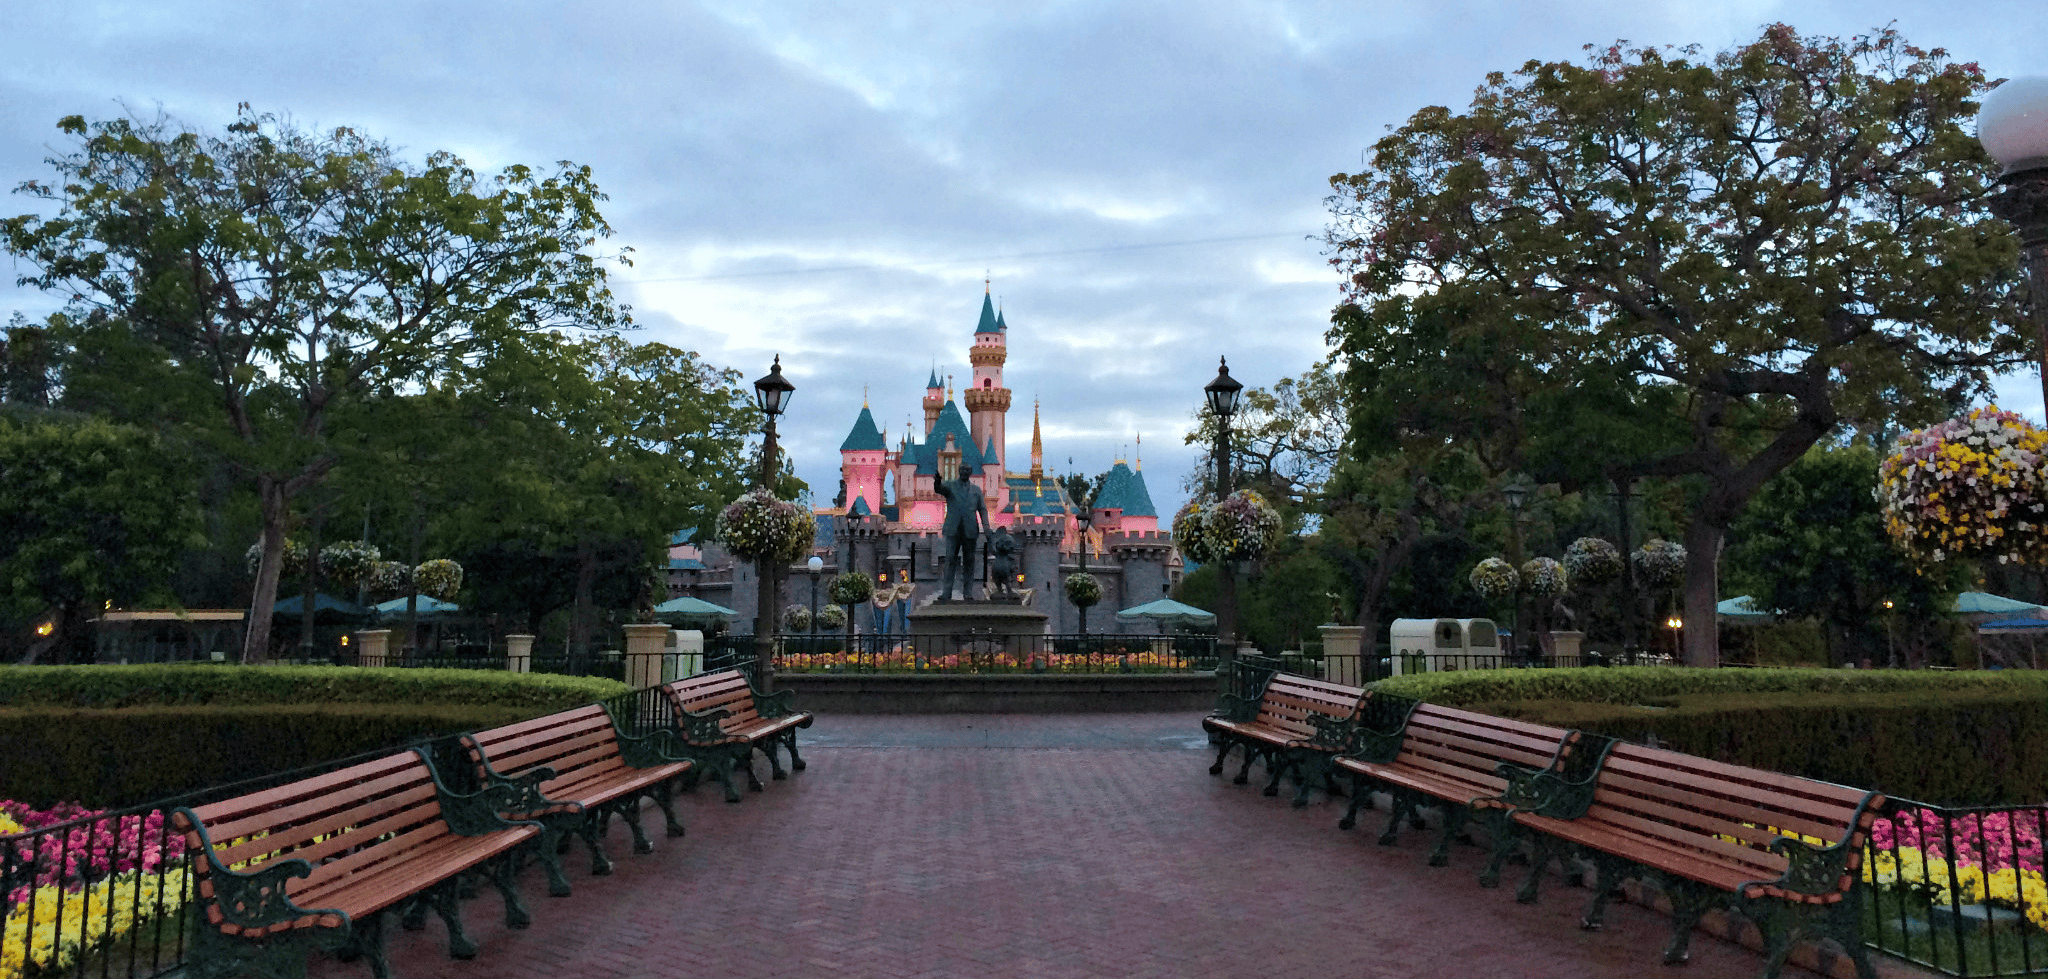 Disneyland | Historic Sites In California